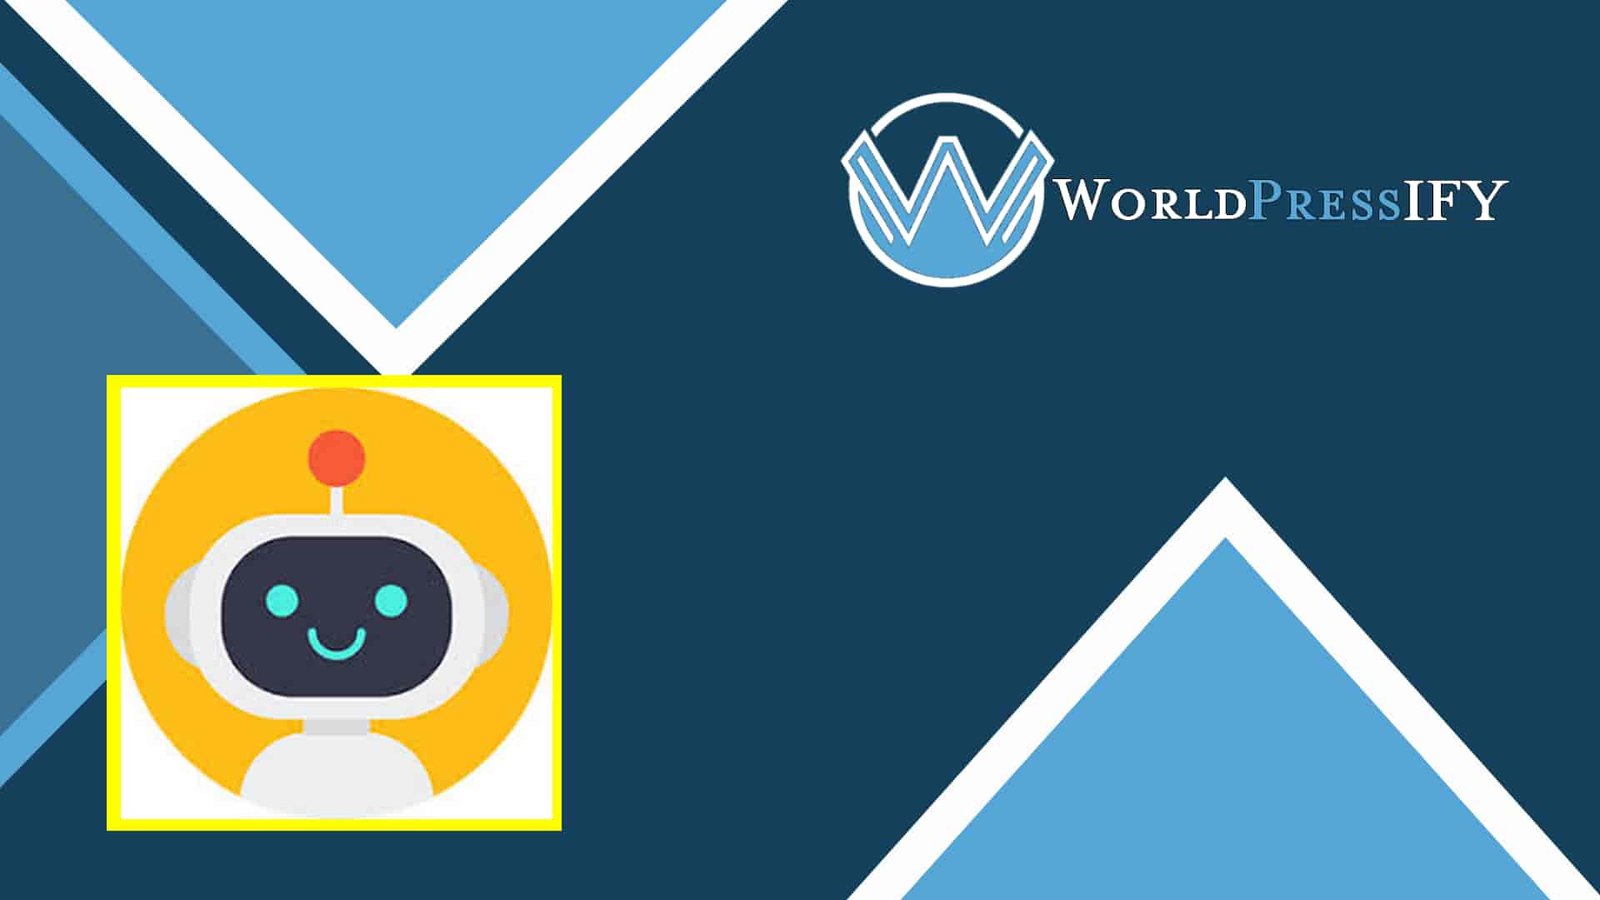 AutomatorWP – HubSpot - WorldPress IFY